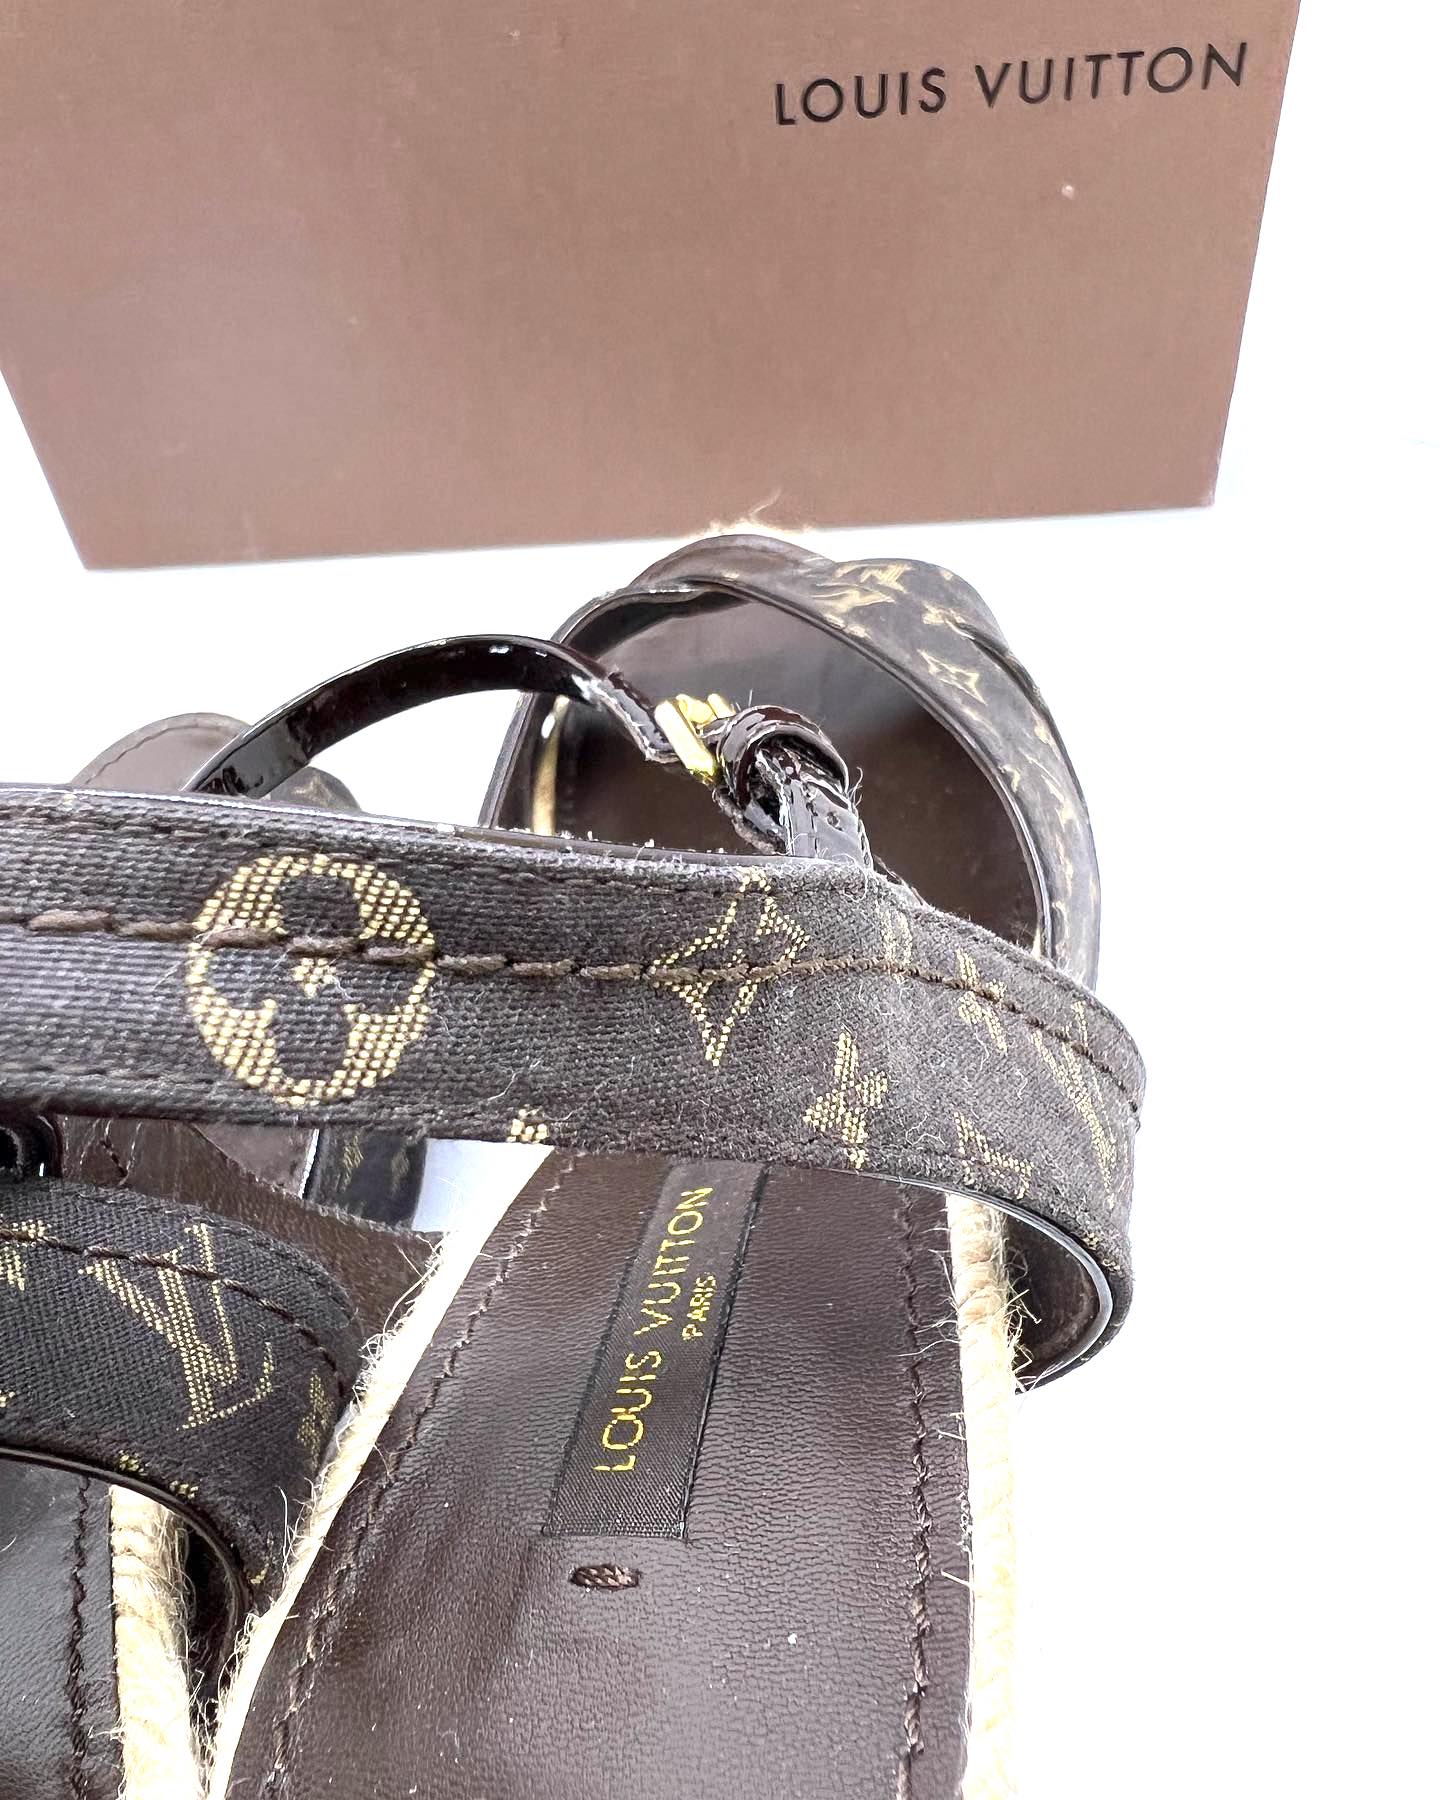 Louise Vuitton Monogram Idylle Canvas Majorca Espadrille Wedge Sandals Size  40.5 Louis Vuitton